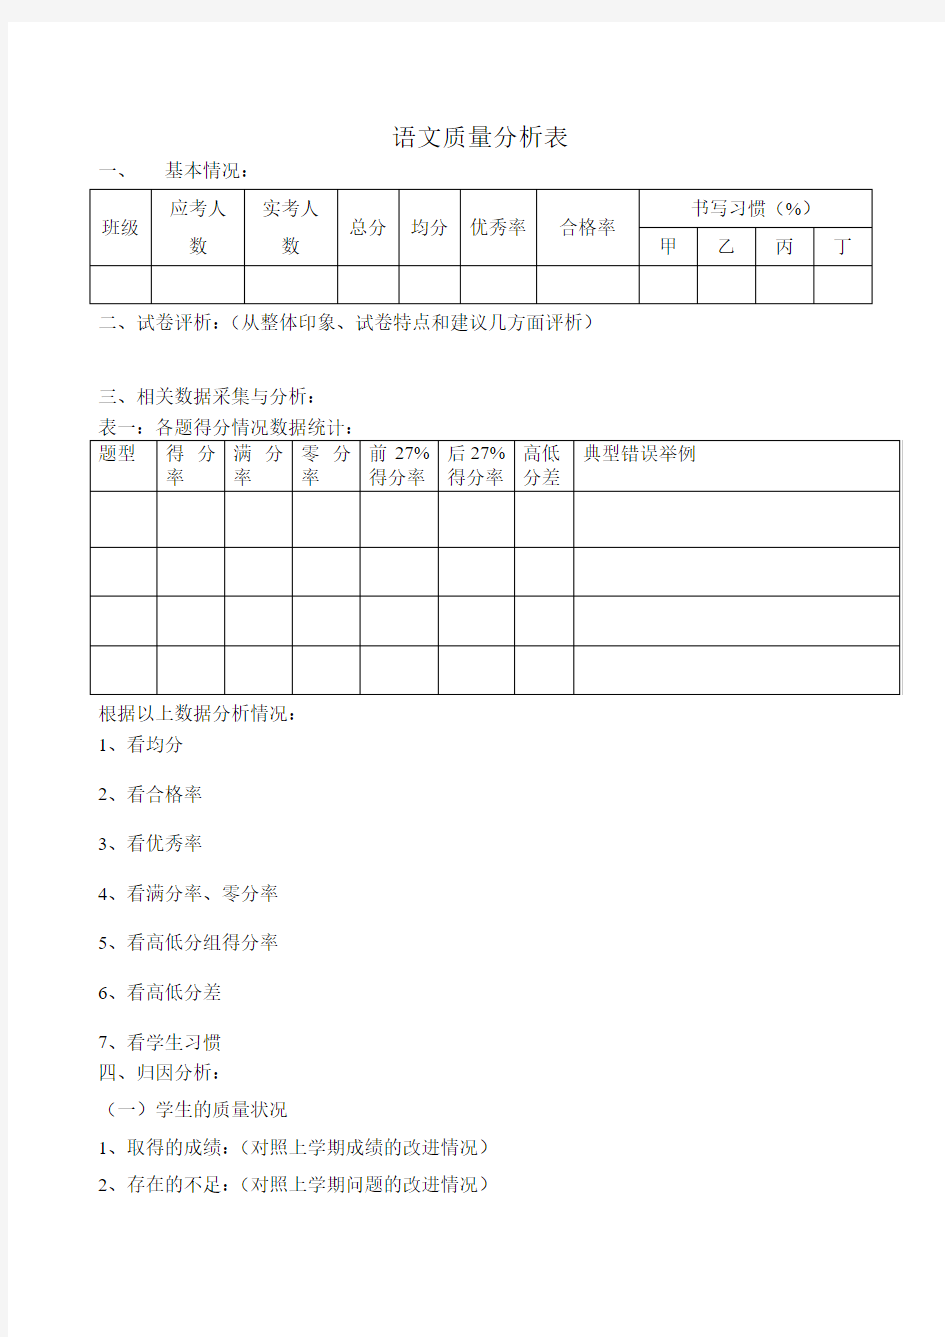 小学语文班级质量分析表(1)